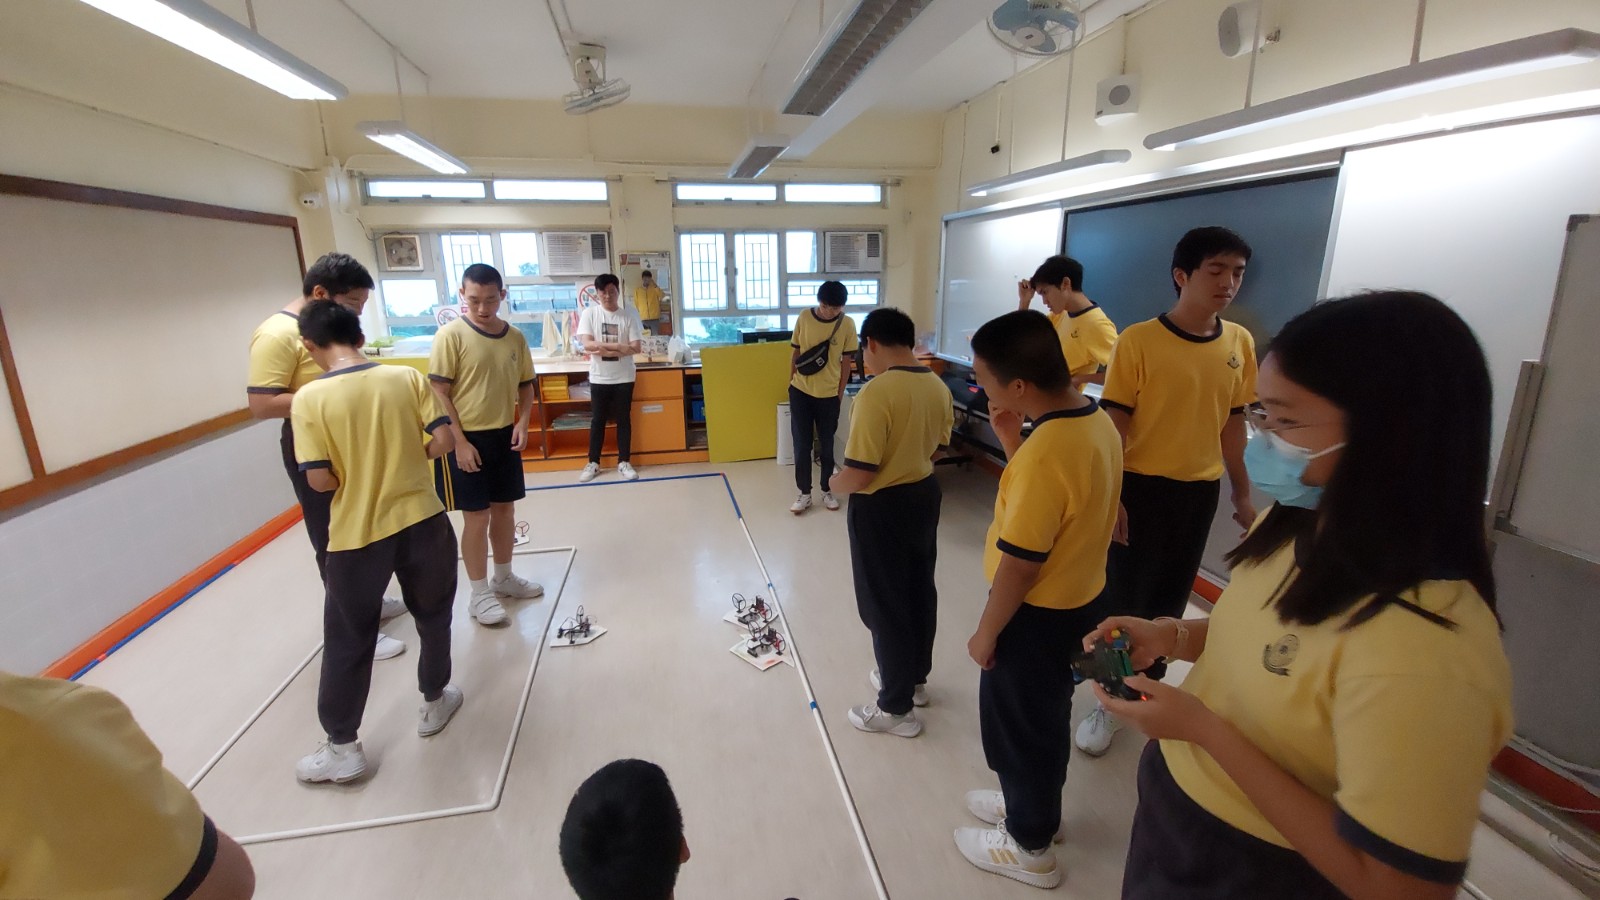 氣墊船學生培訓課程 - 東華三院徐展堂學校